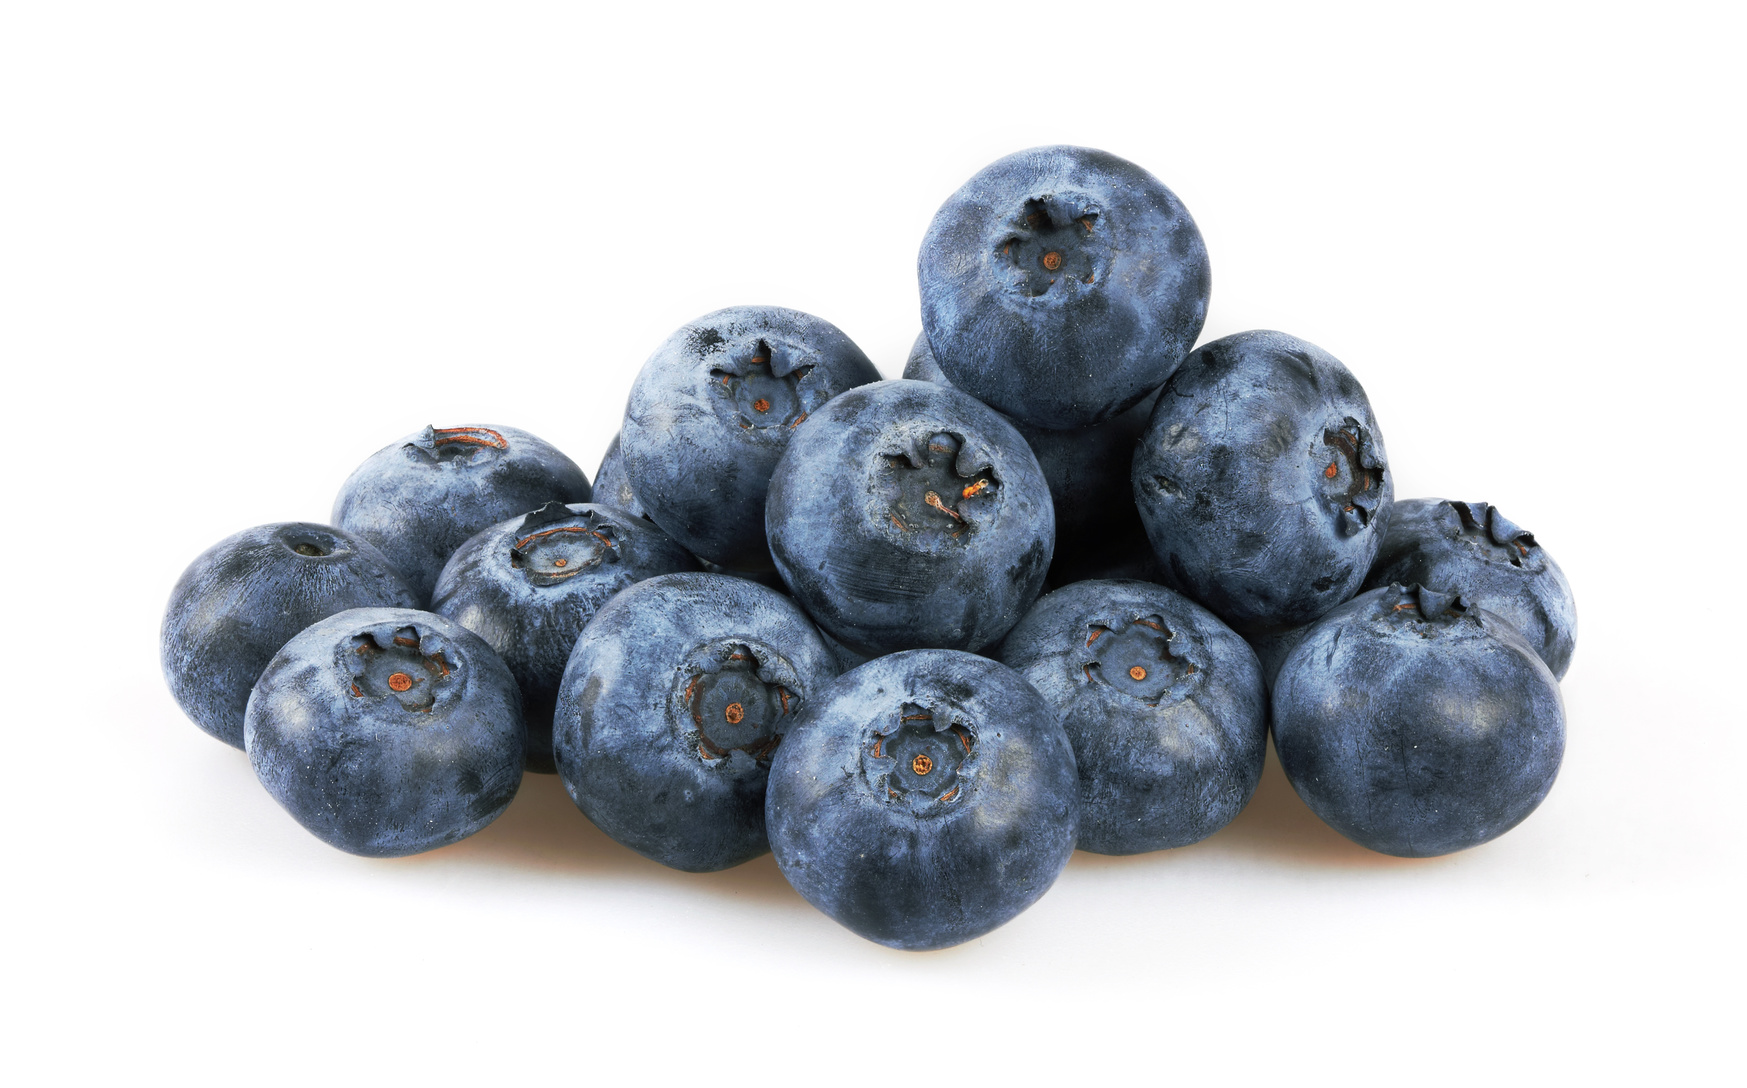 Blueberries harvest